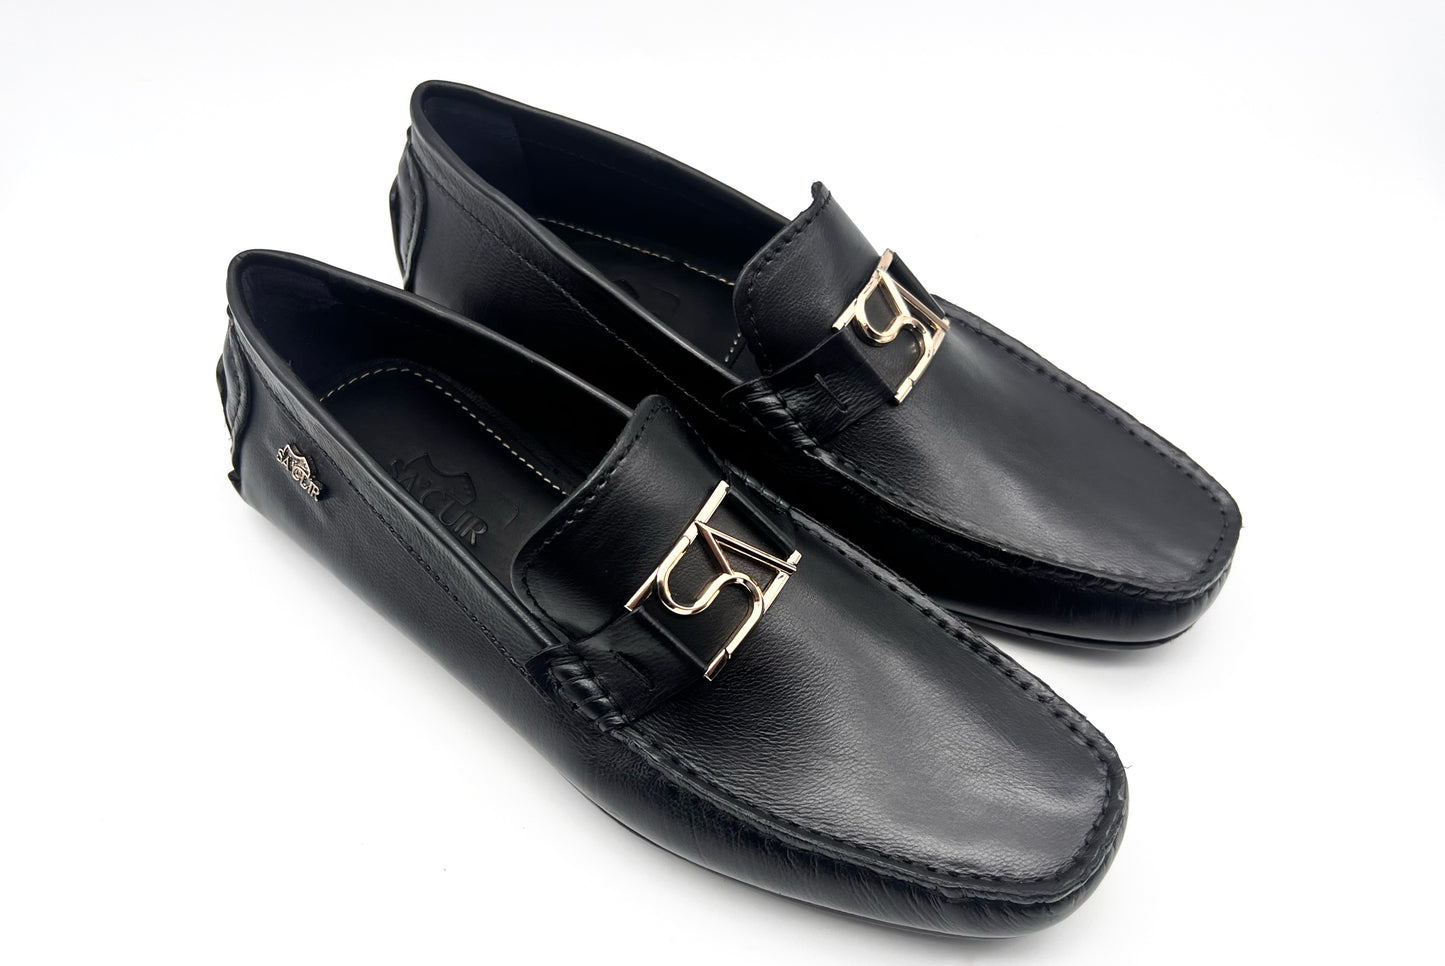 SA Calf Leather Loafers